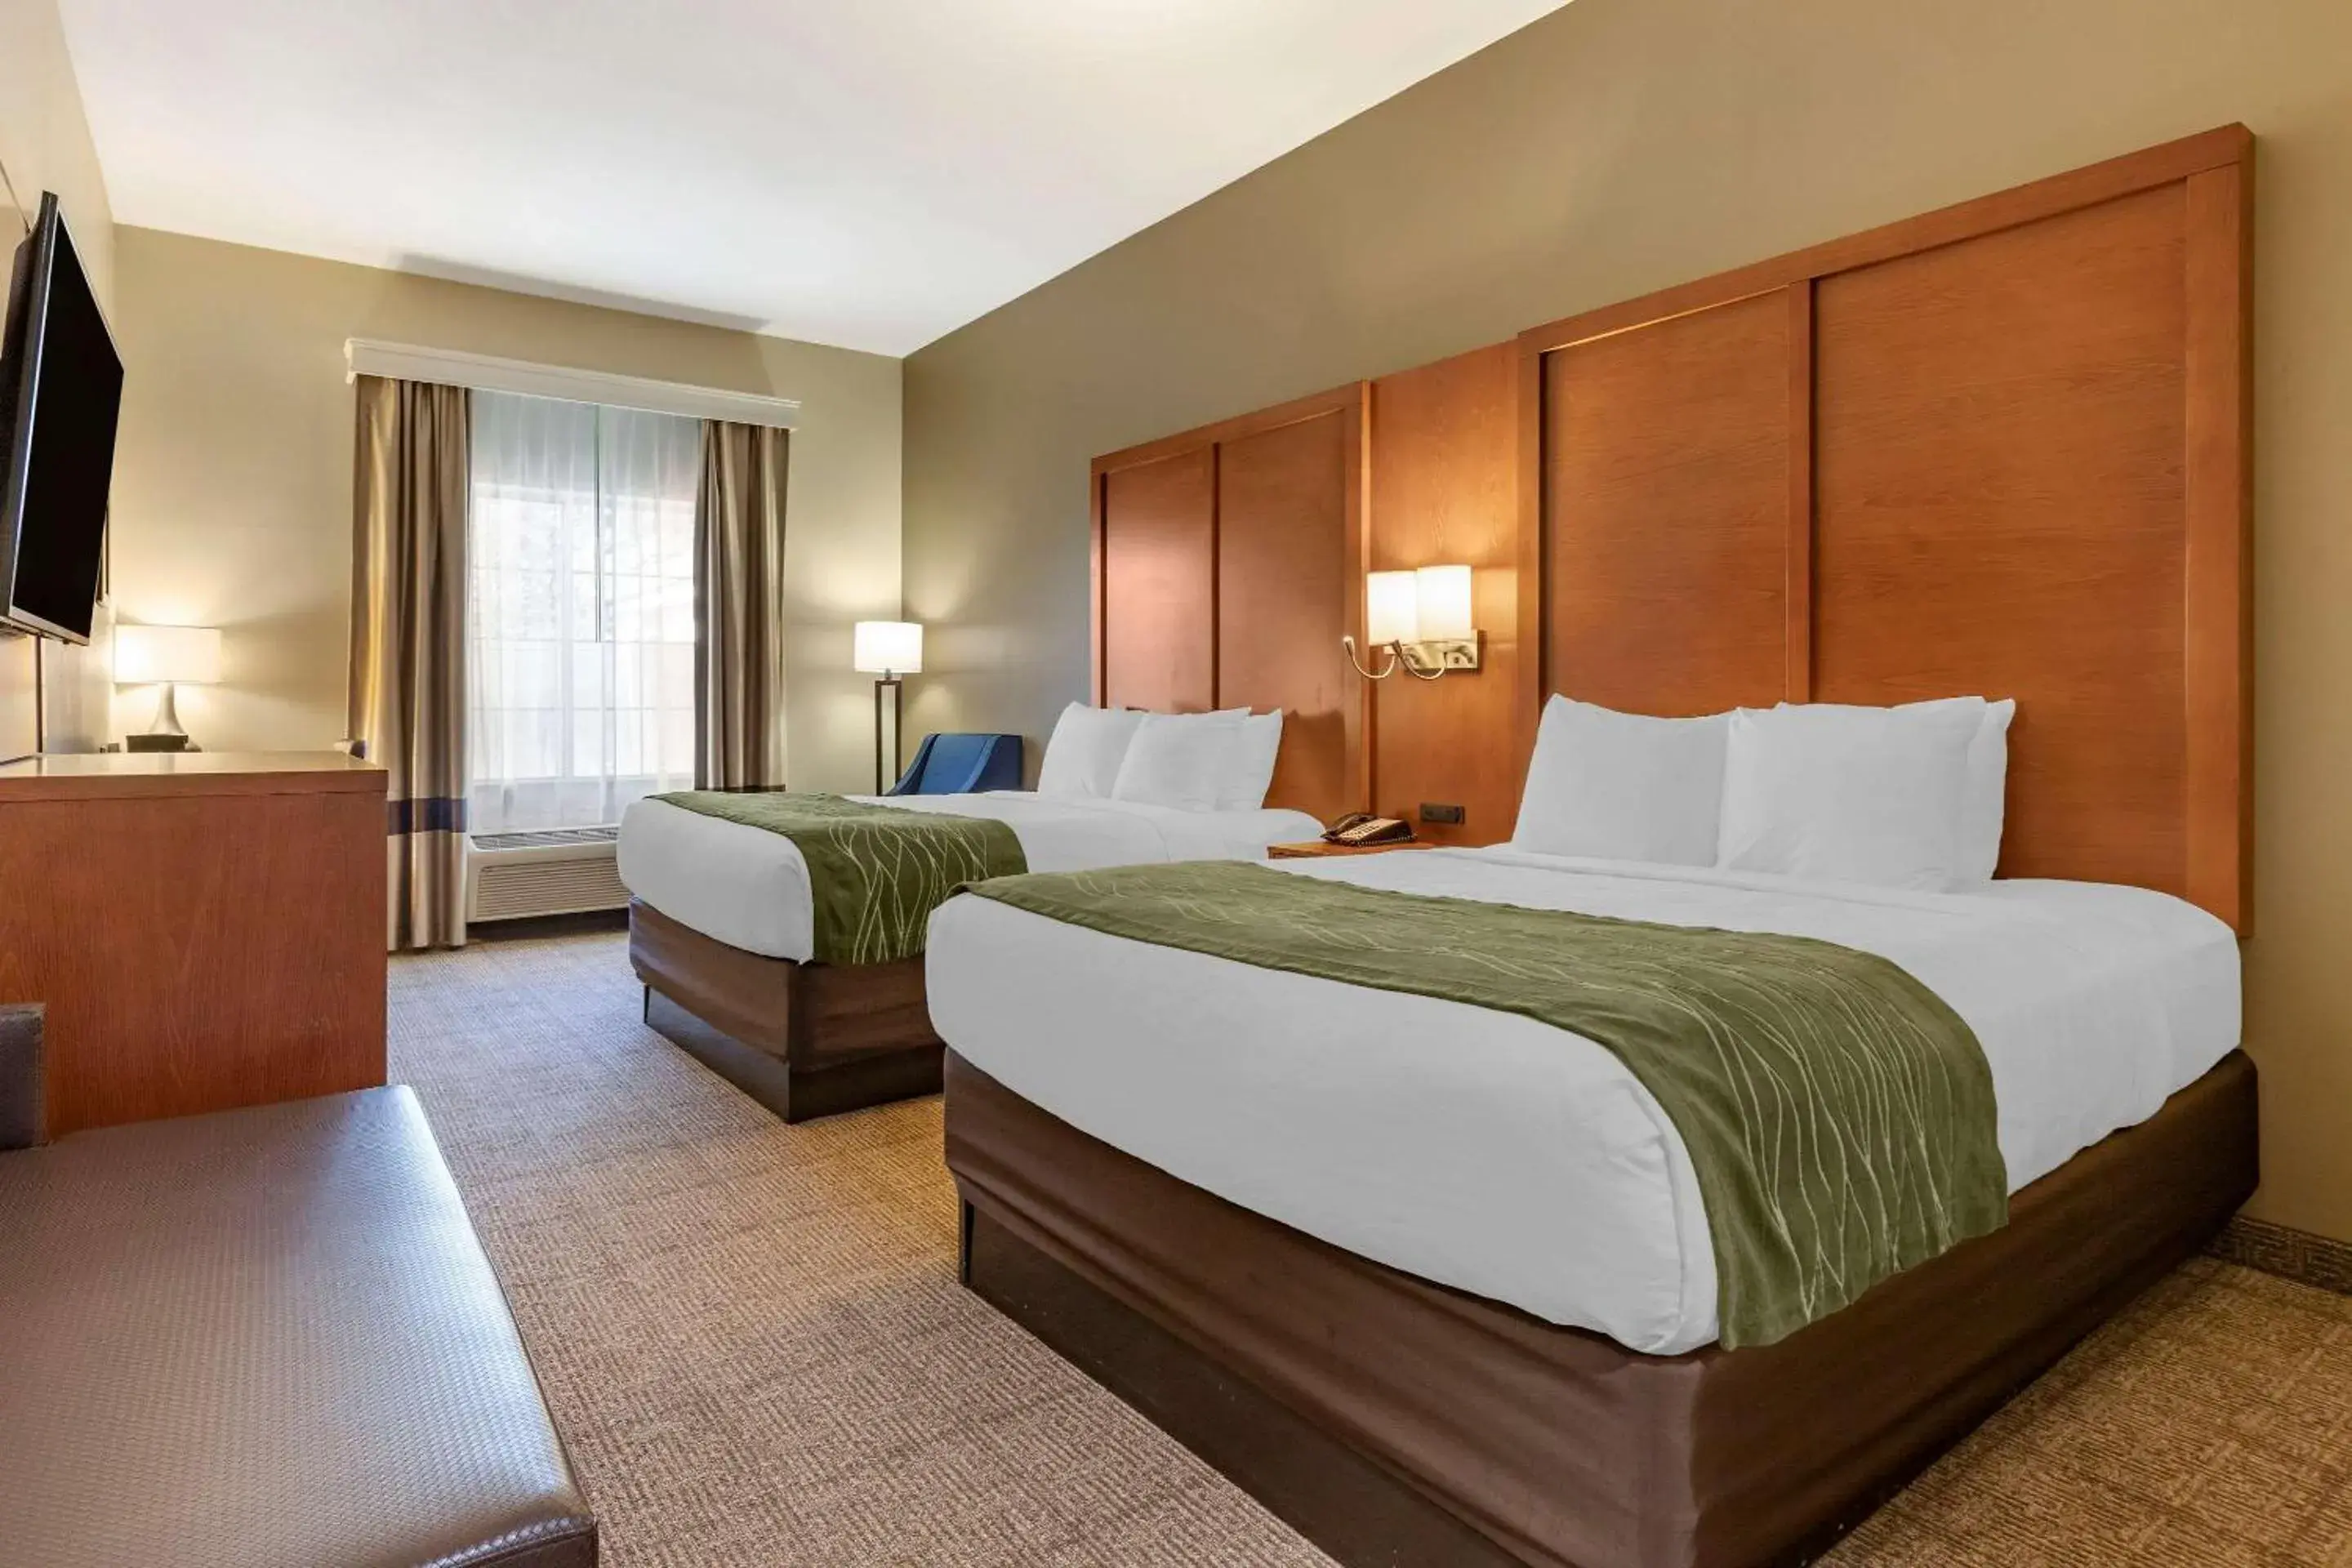 Efficiency Queen Room with Two Queen Beds - Accessible/Non-Smoking in Comfort Inn & Suites Orangeburg